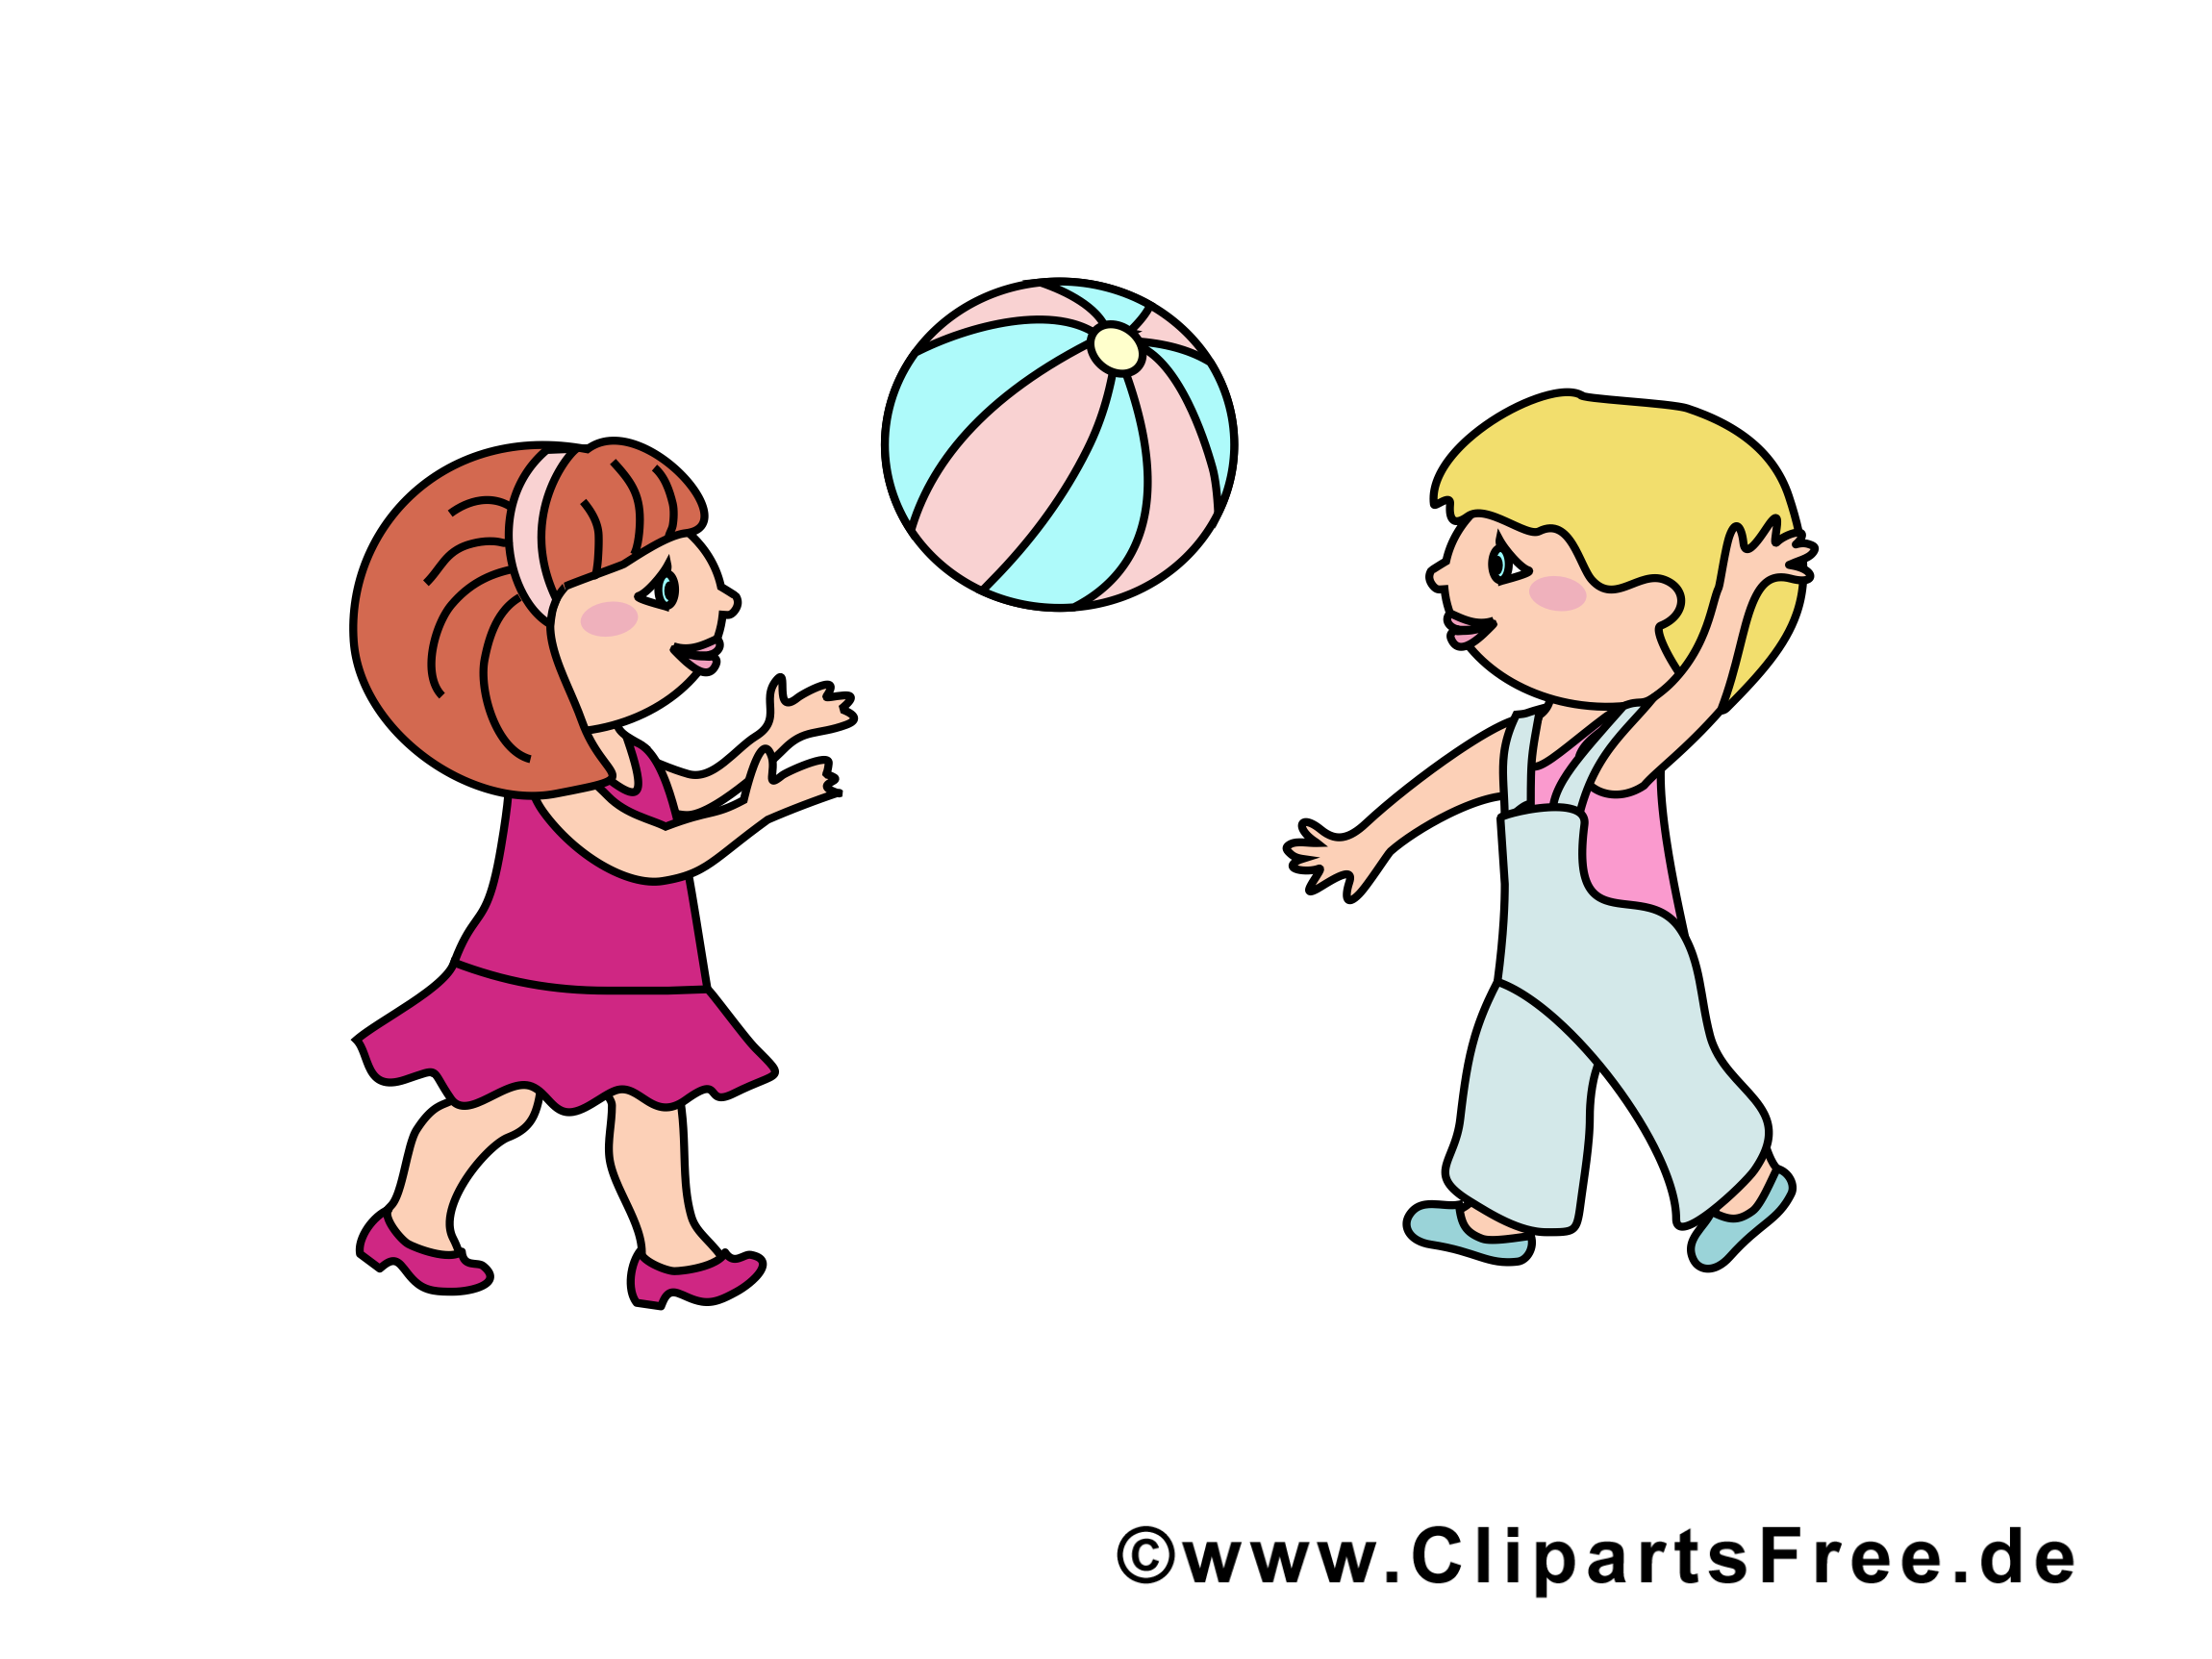 clipart gratuit ballon - photo #27